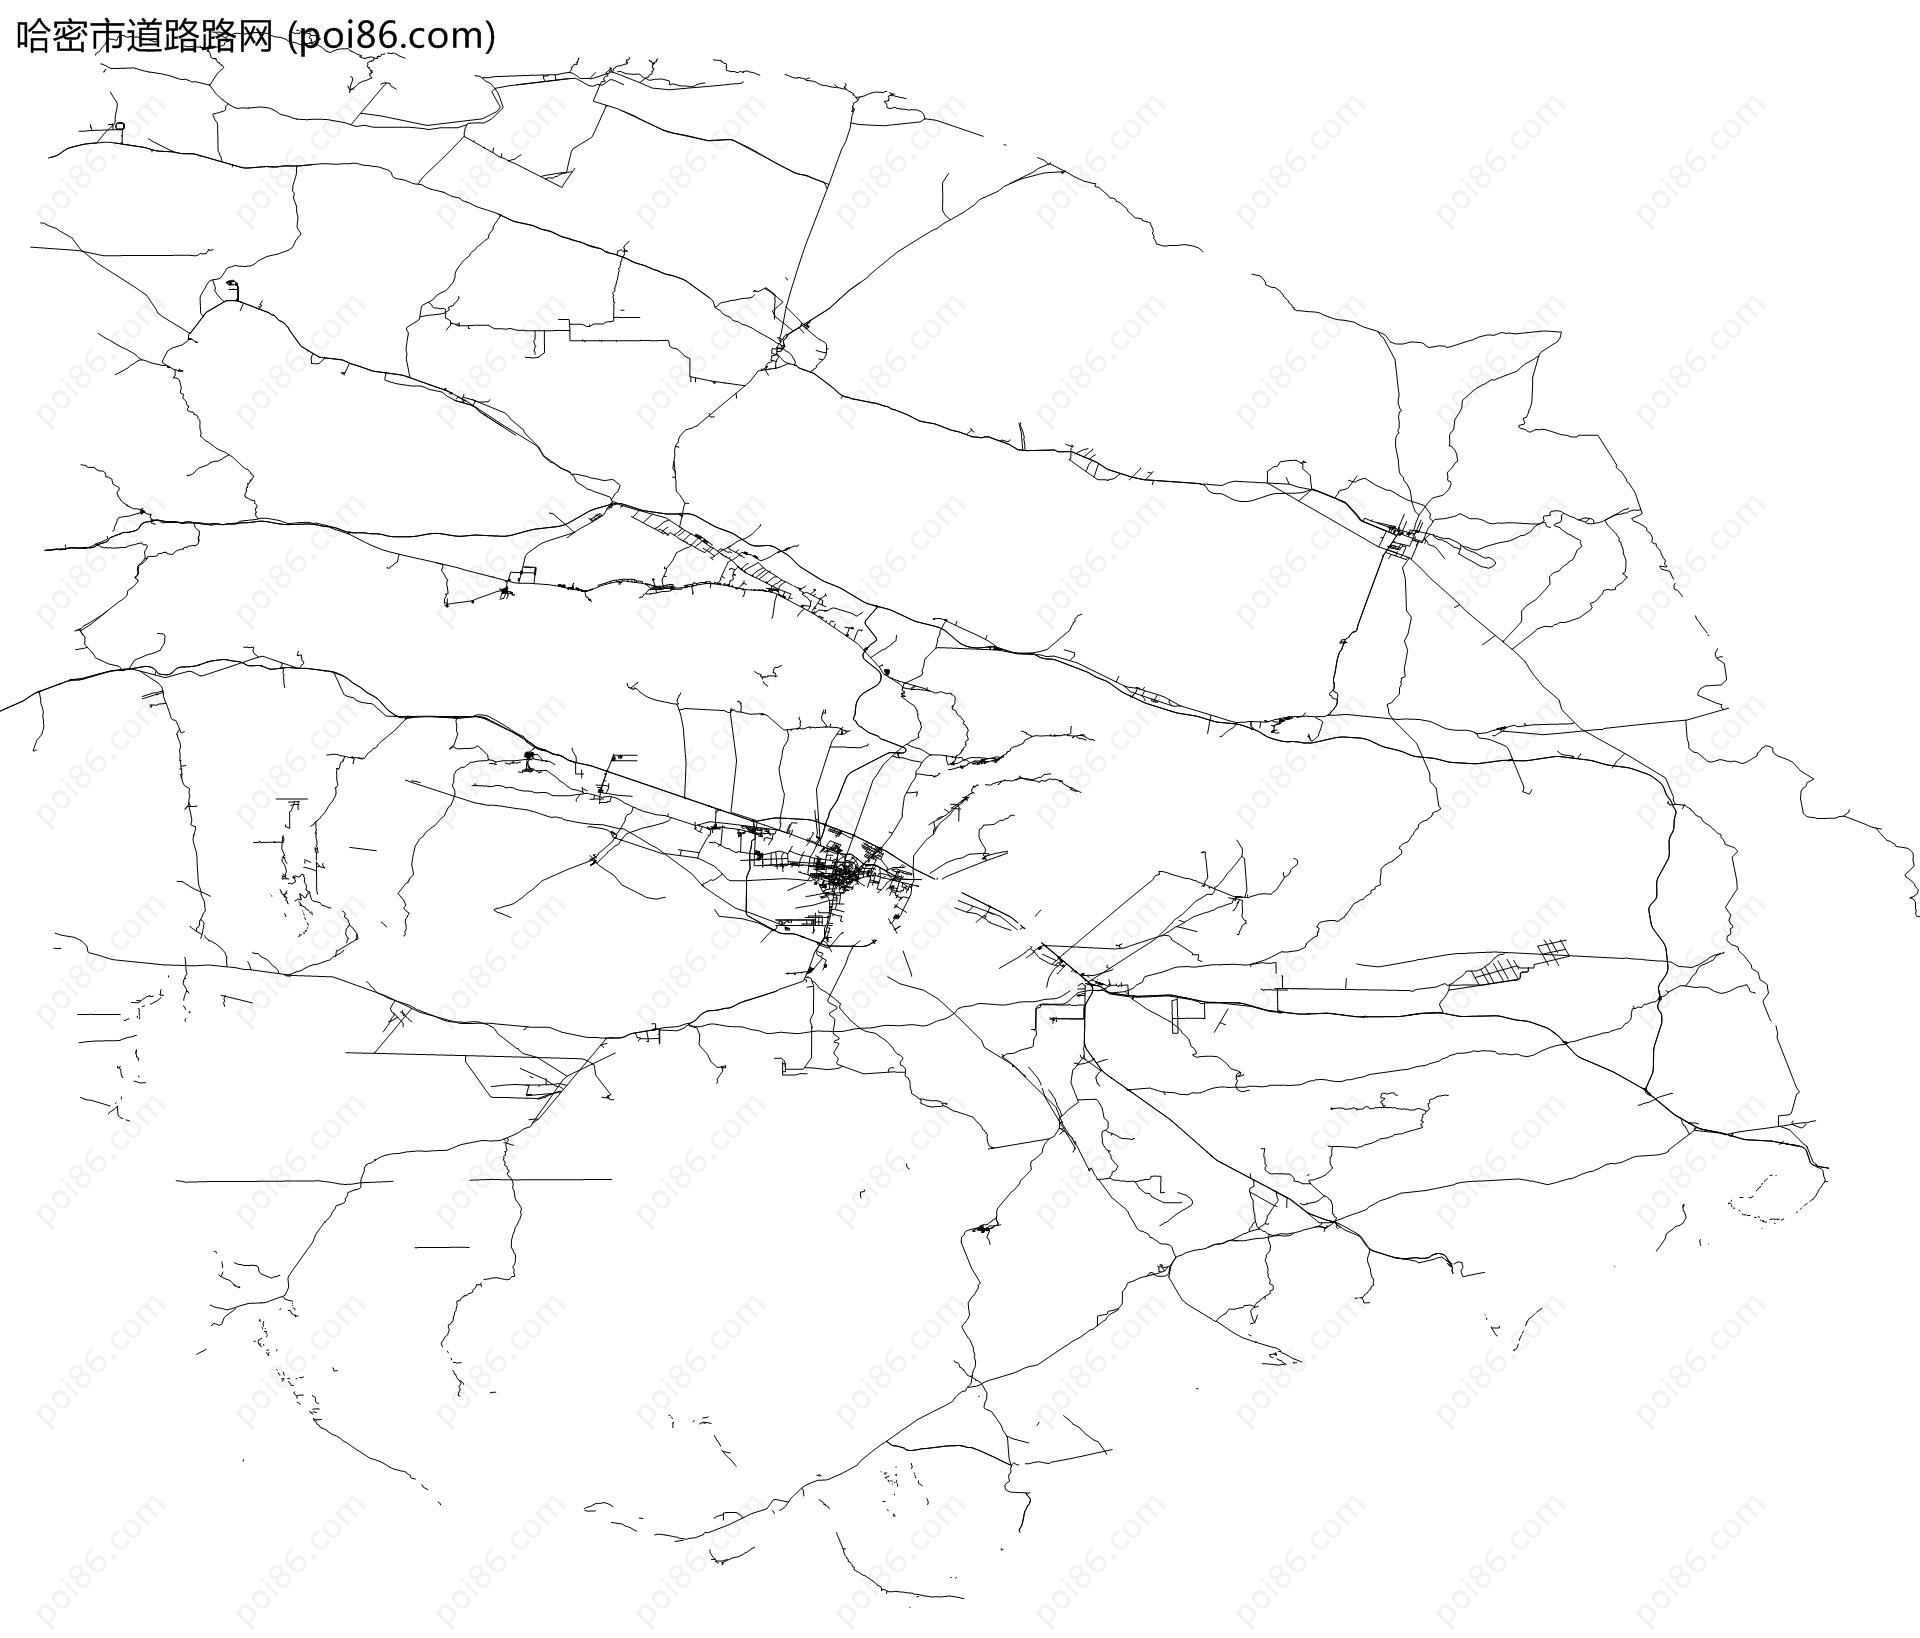 哈密市道路路网地图